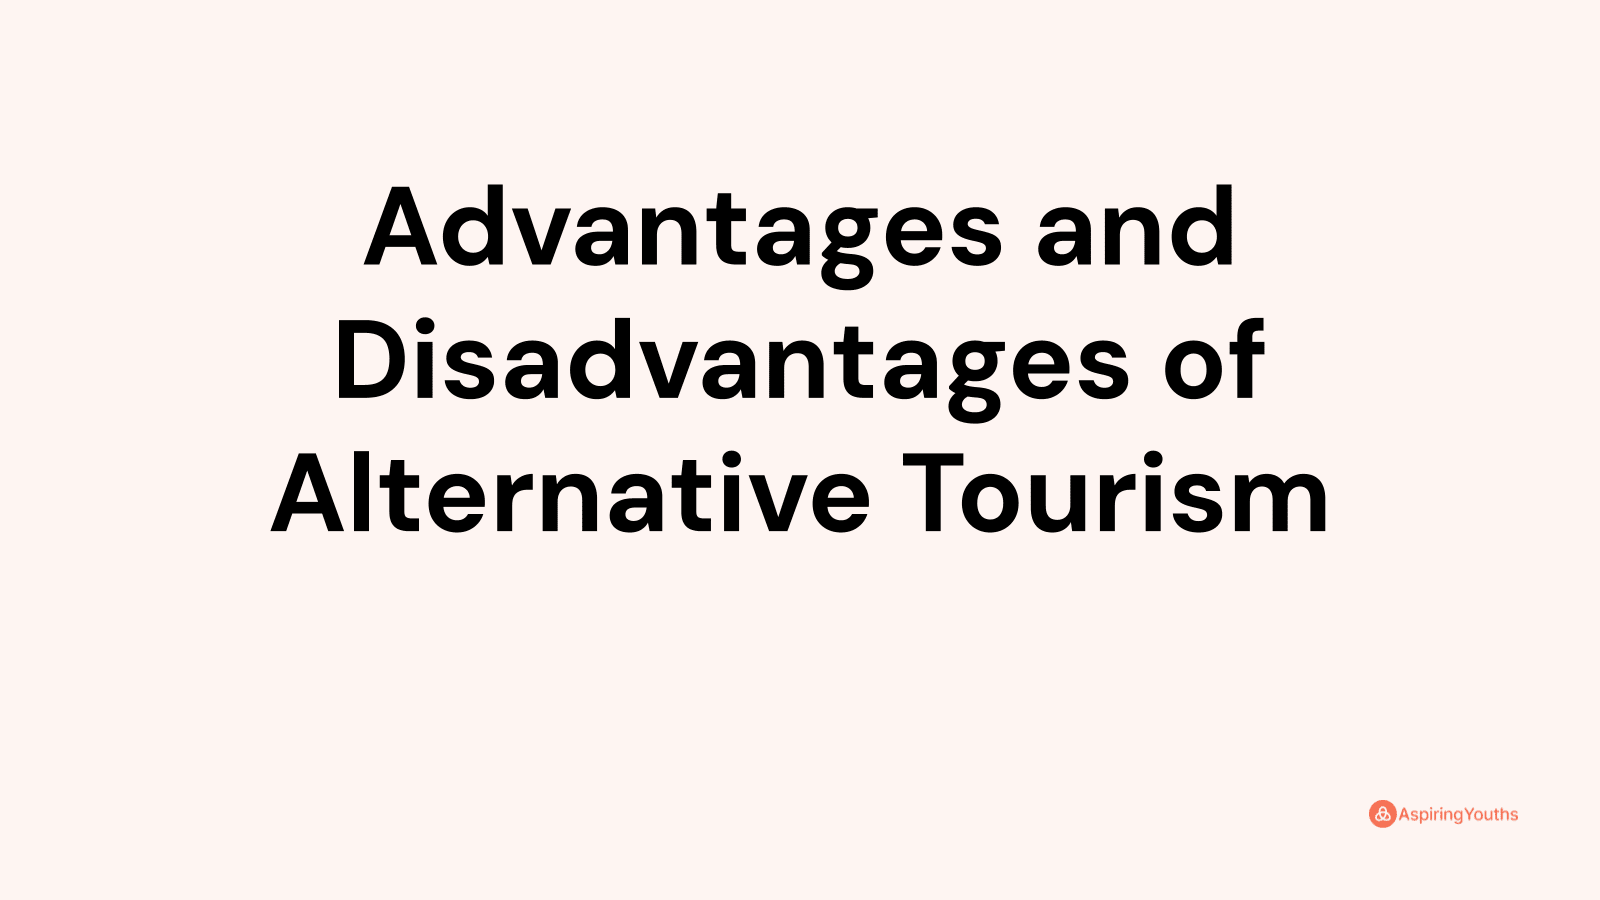 Advantages and disadvantages of Alternative Tourism